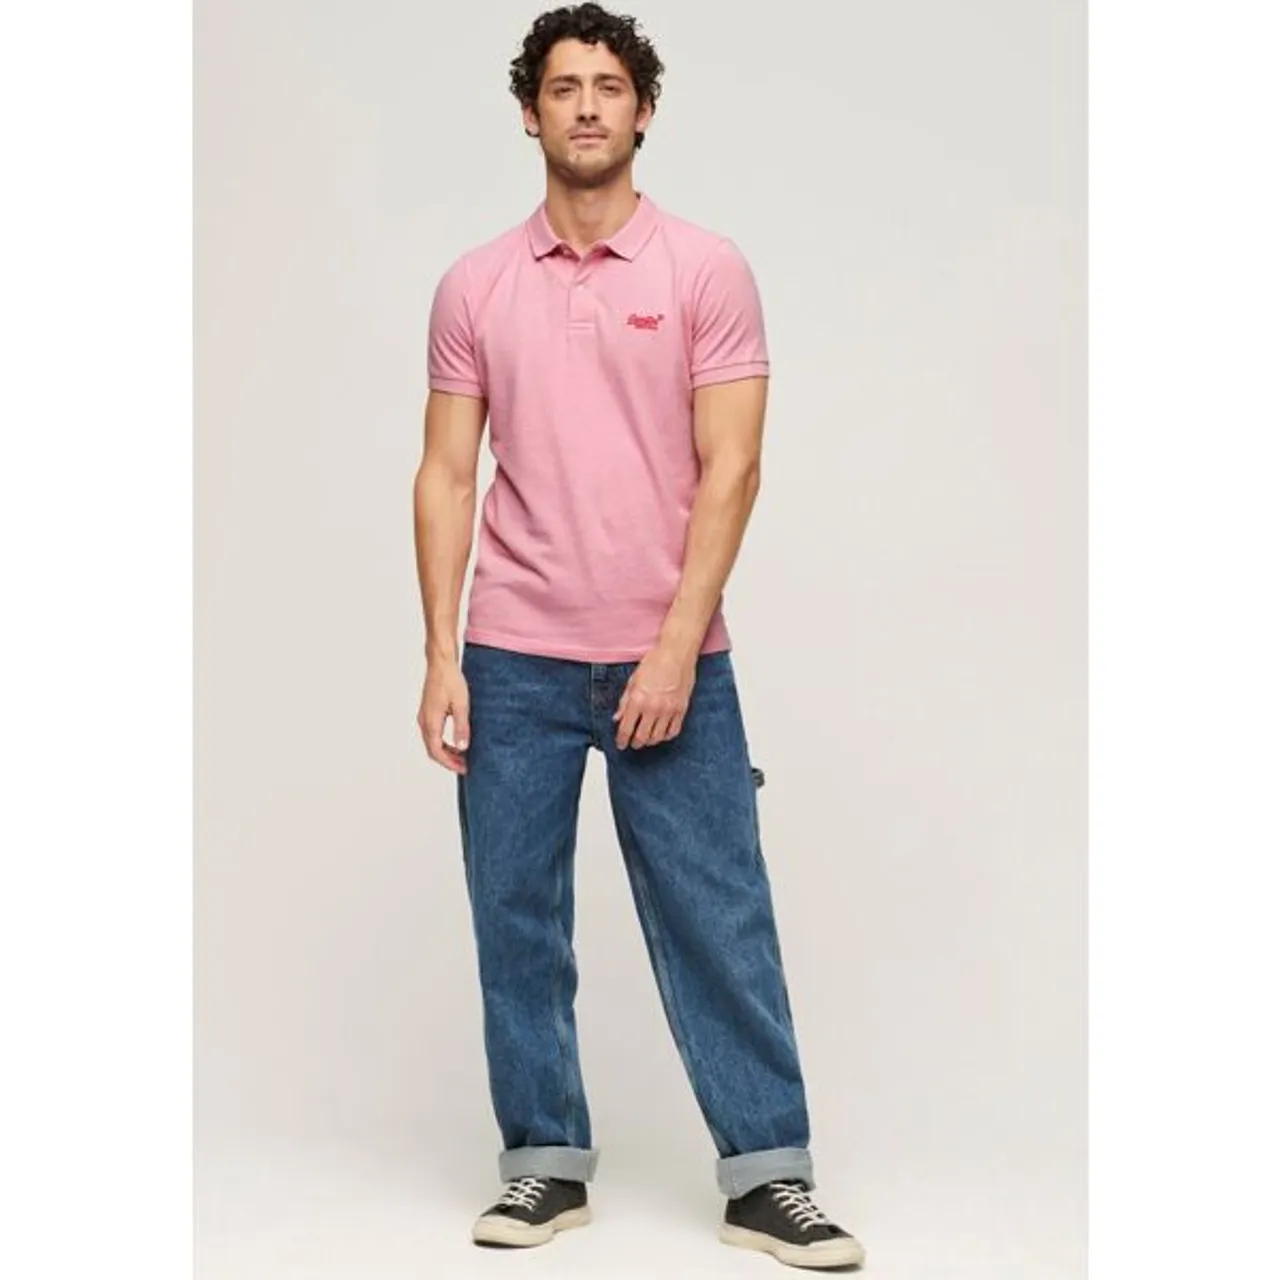 Poloshirt SUPERDRY "CLASSIC PIQUE POLO" Gr. XL, pink (light marl) Herren Shirts Kurzarm